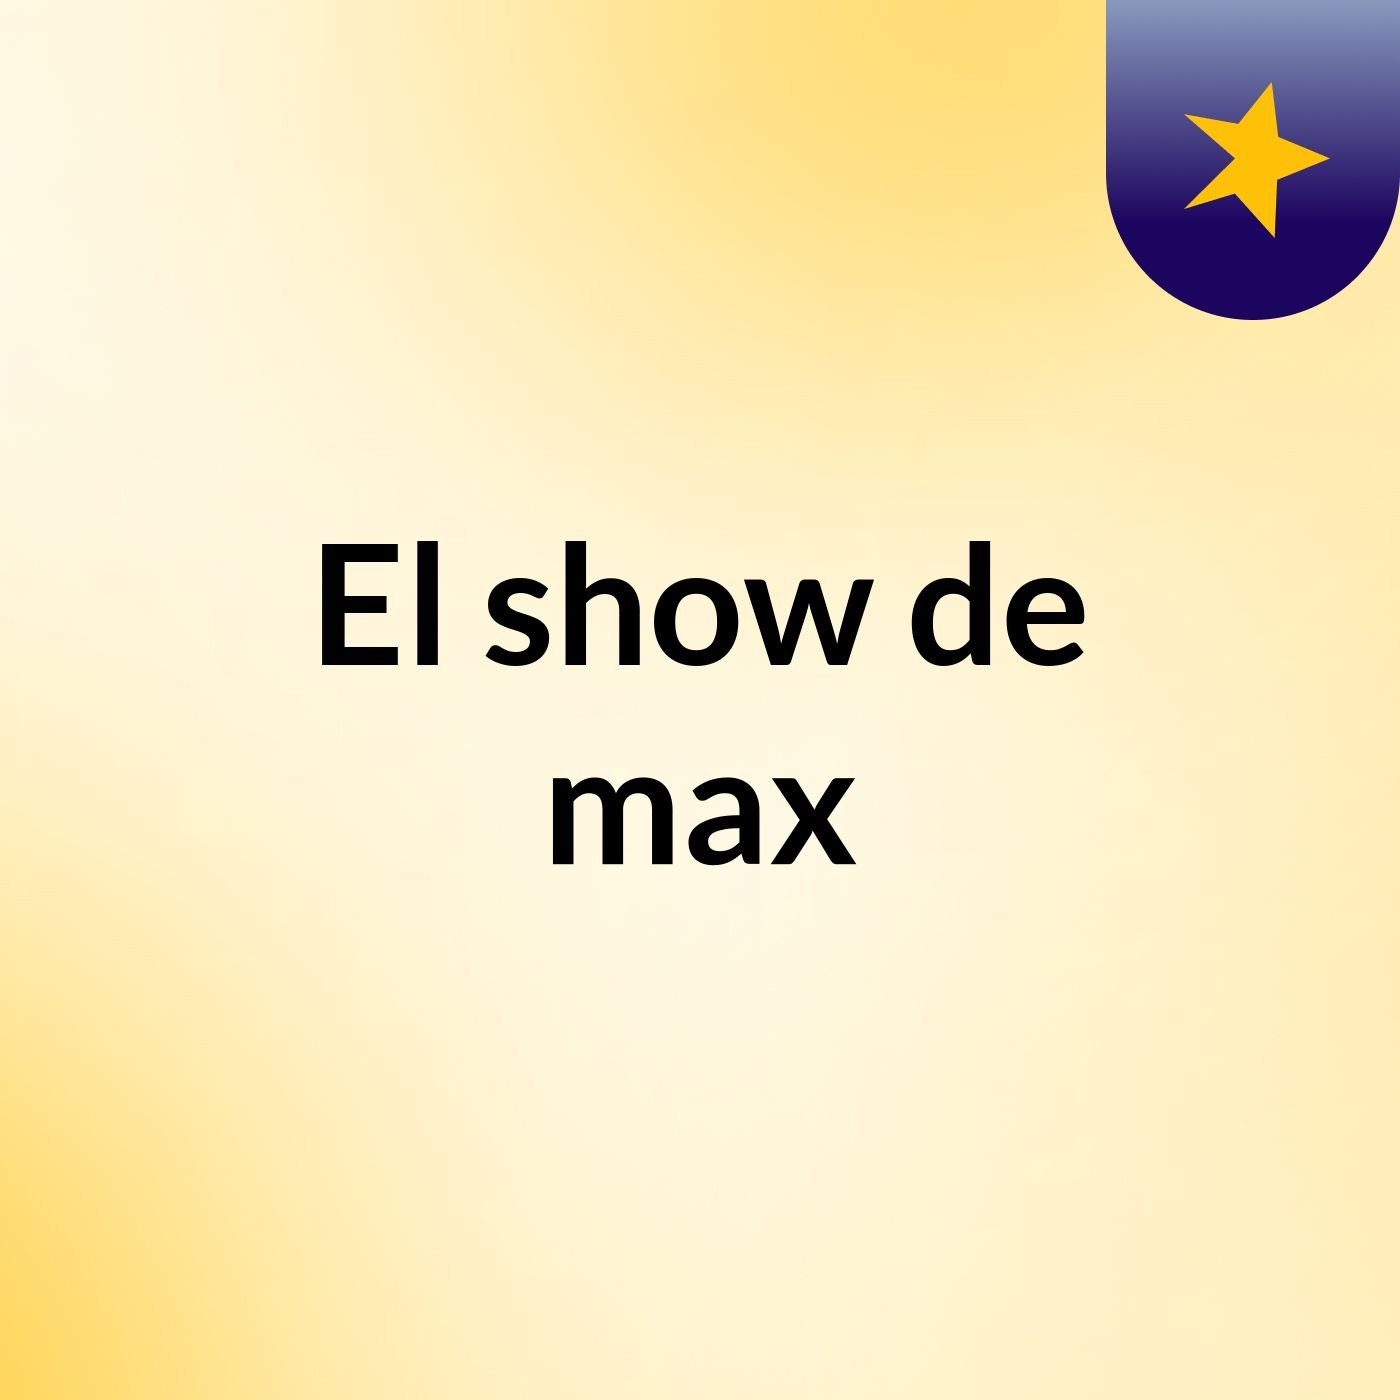 El show de max